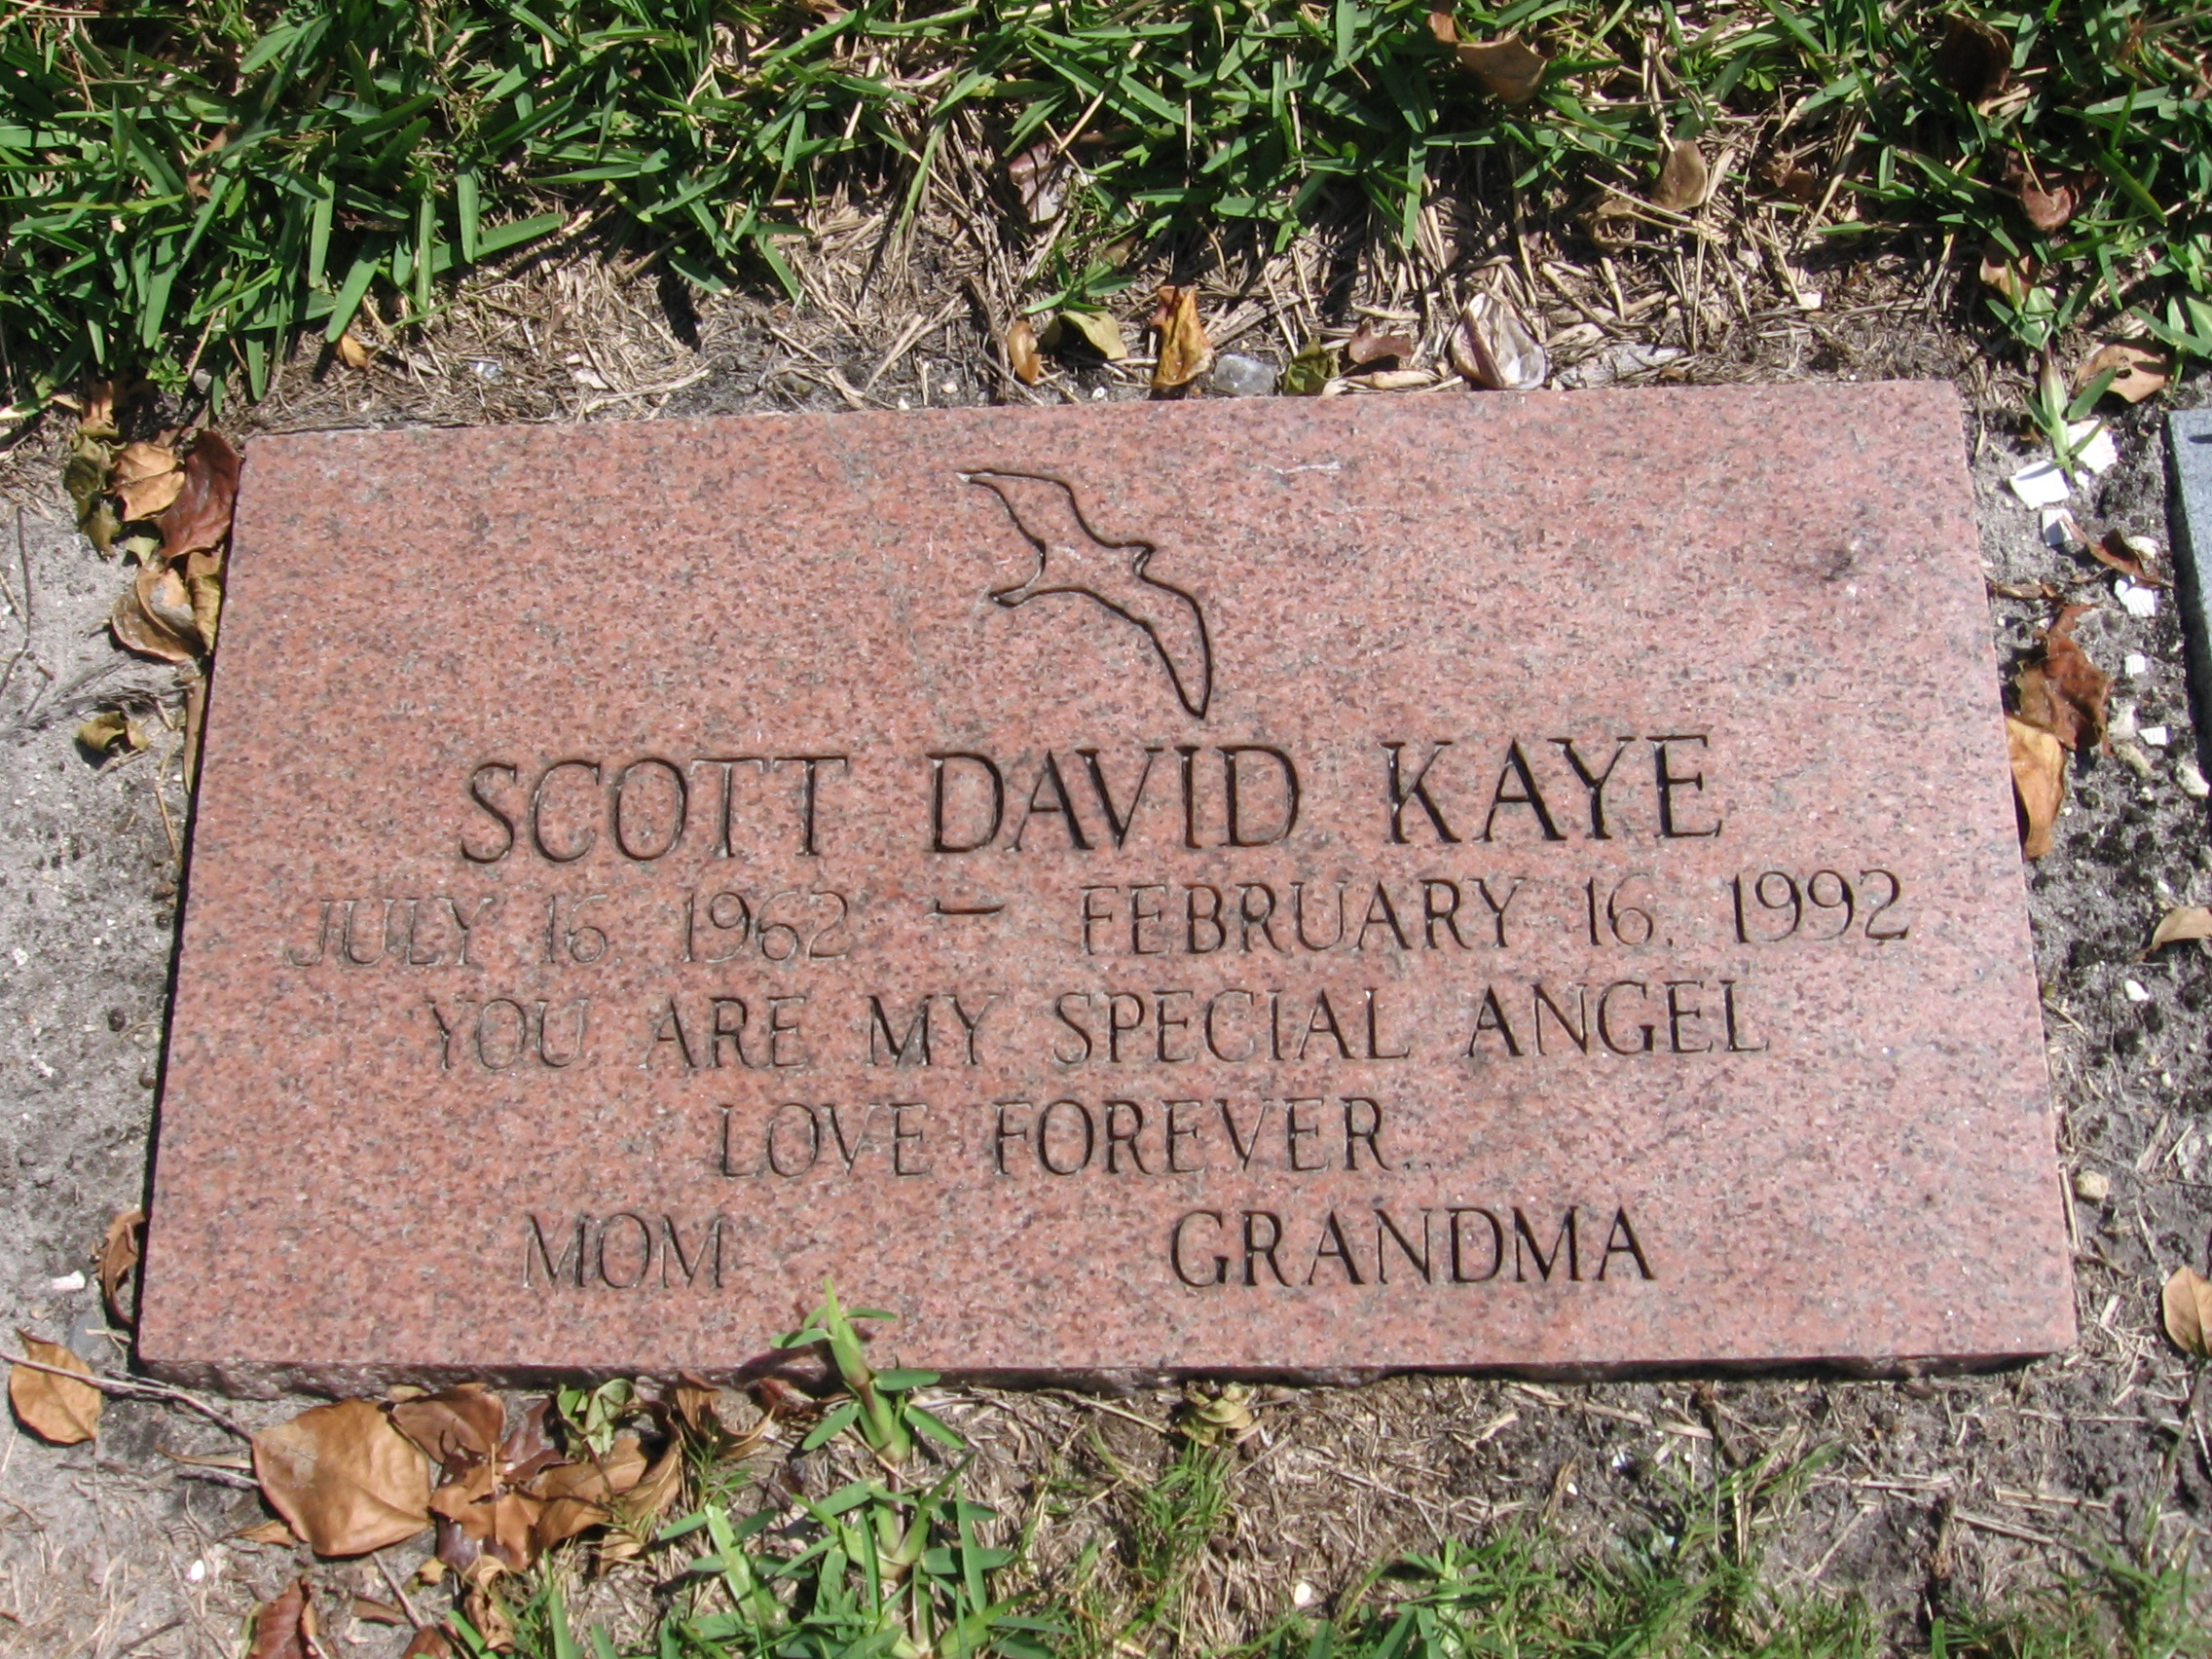 Scott David Kaye